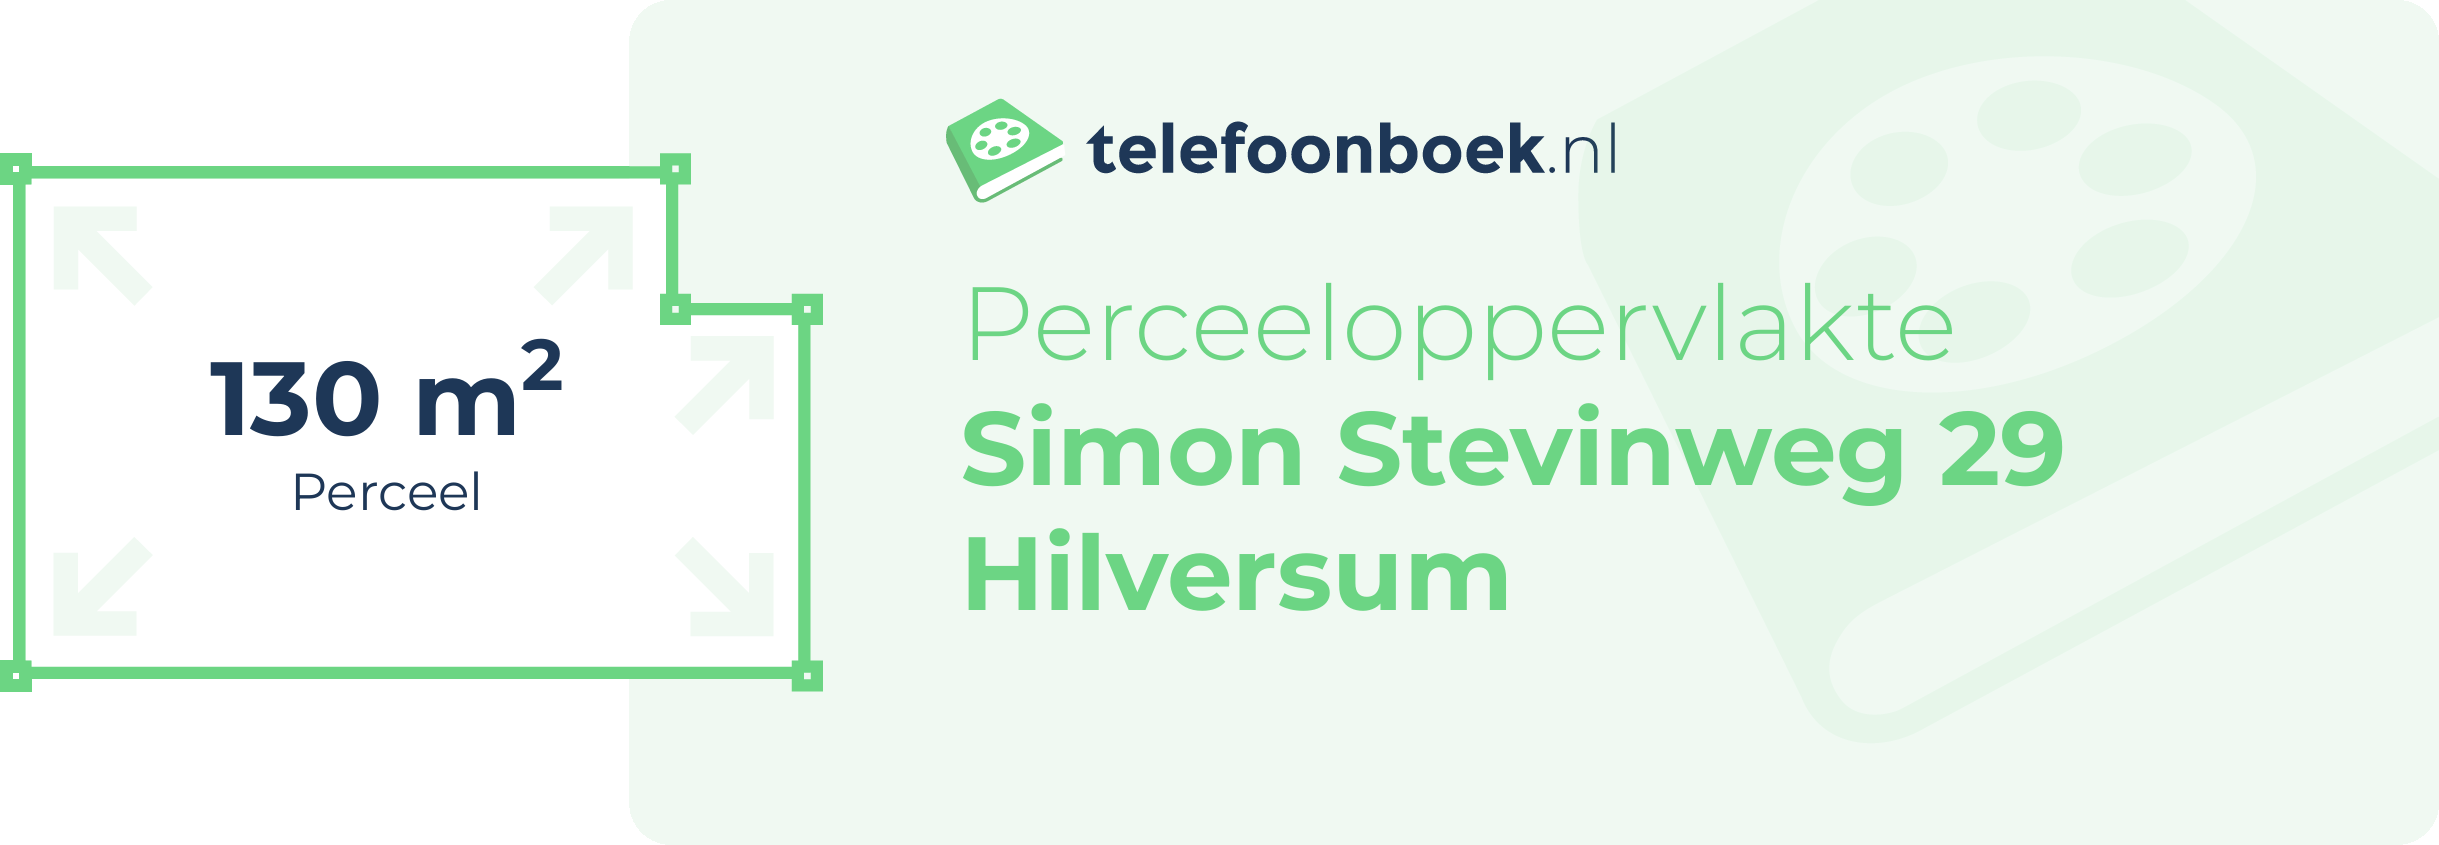 Perceeloppervlakte Simon Stevinweg 29 Hilversum